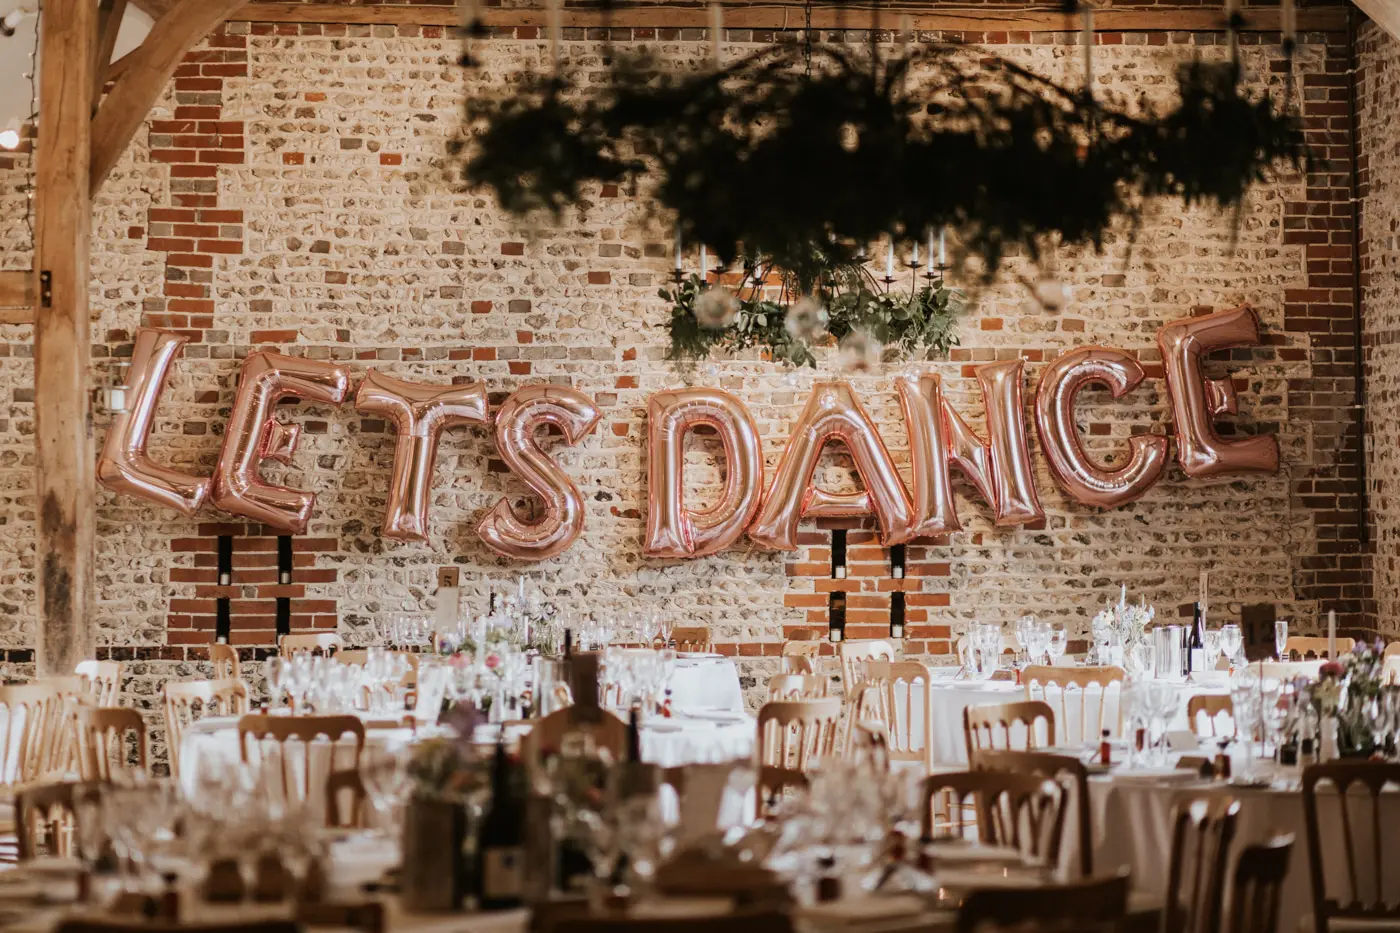 upwaltham barns wedding gallery receptions lets dance